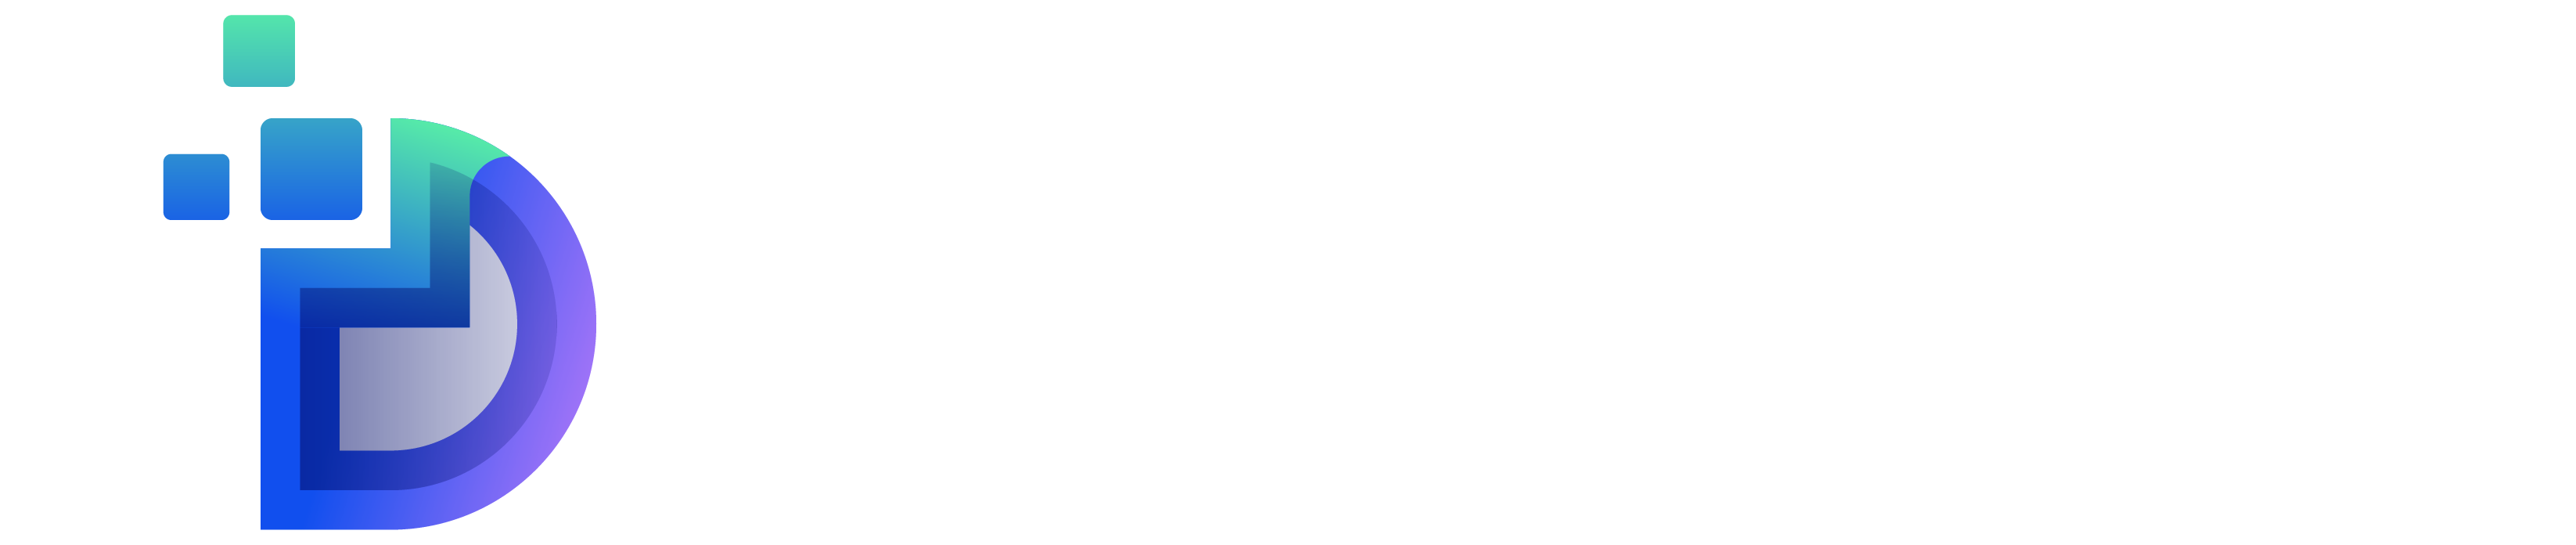 Digital Pledge | A Digital Marketing Agency